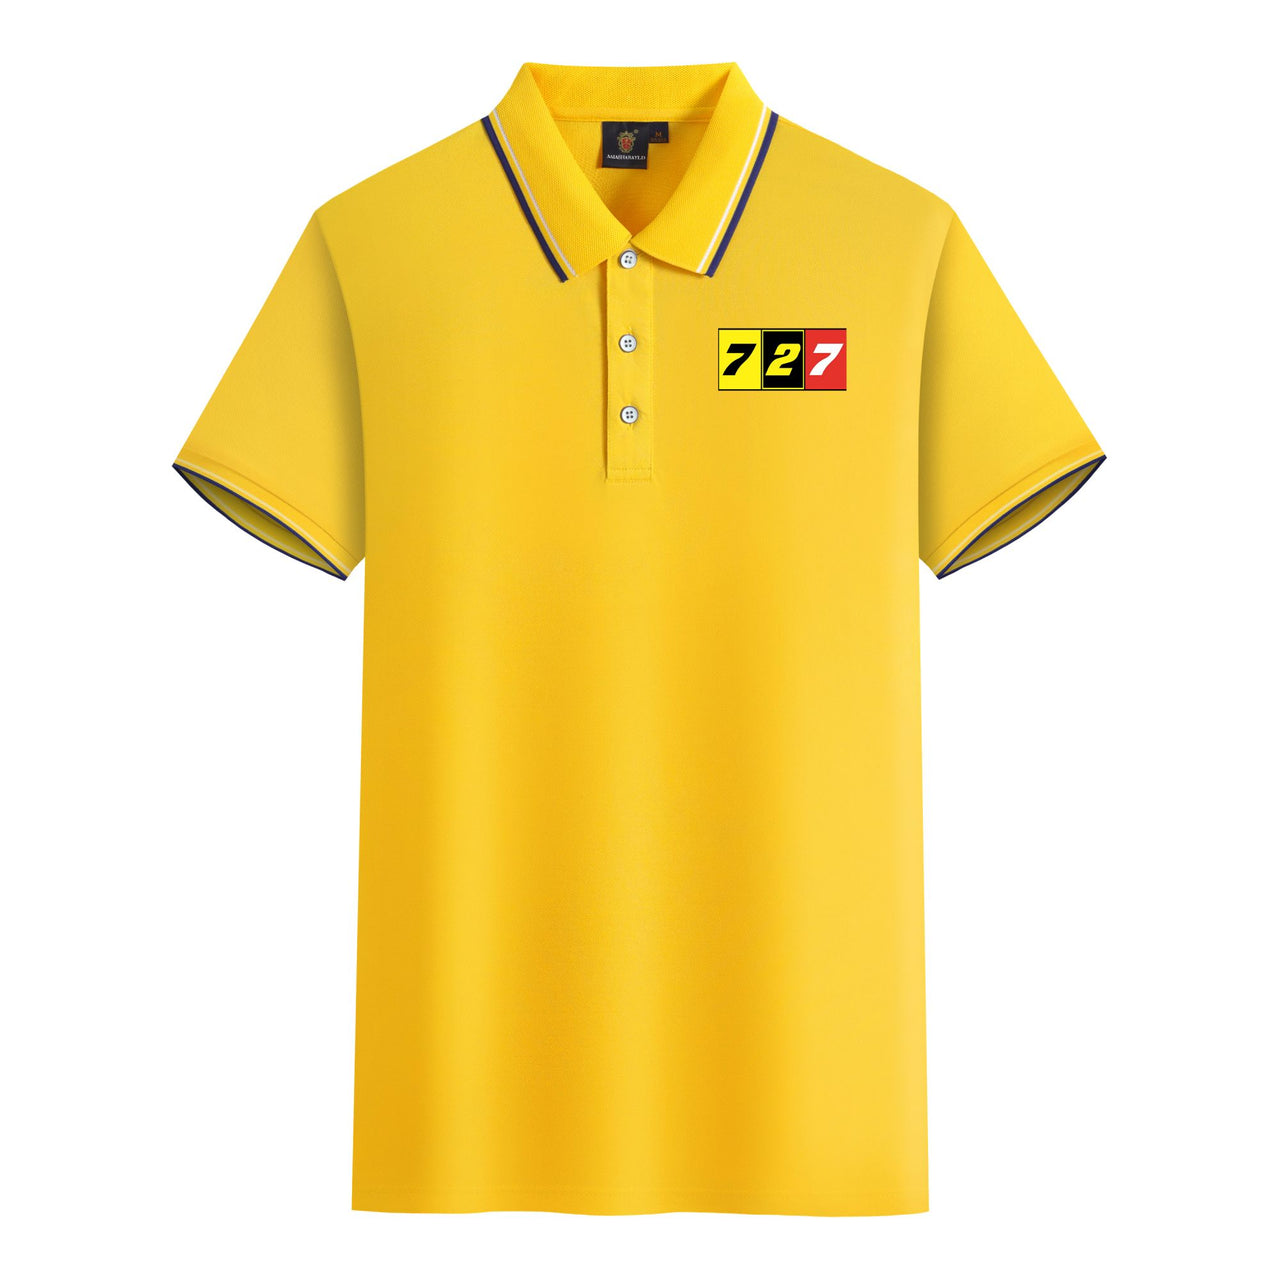 Flat Colourful 727 Designed Stylish Polo T-Shirts